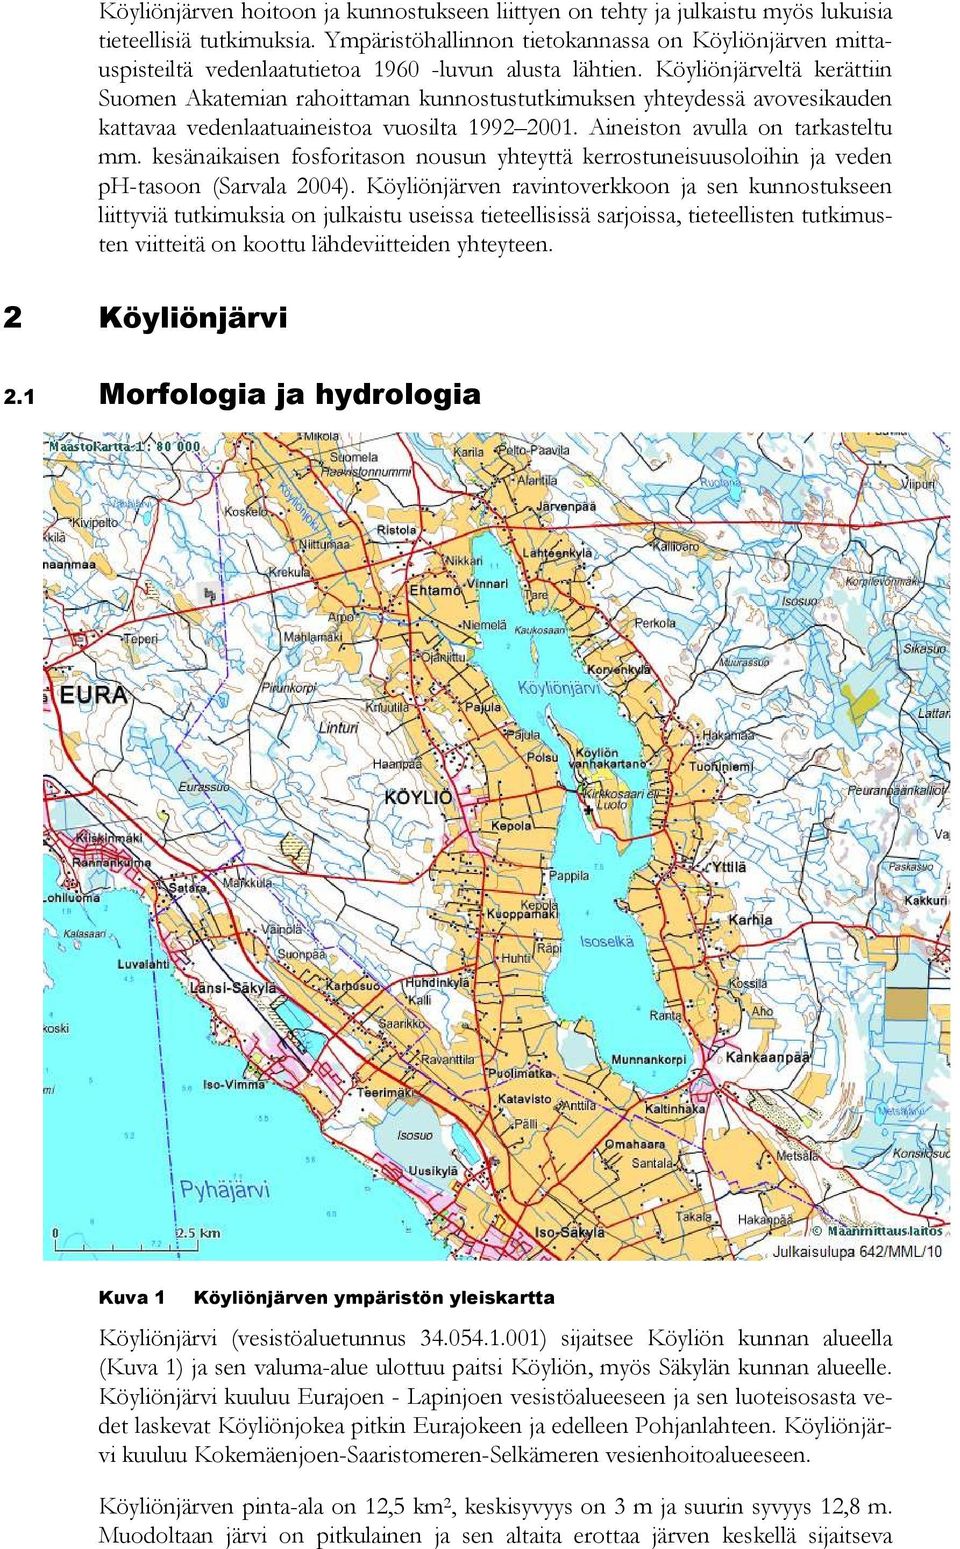 Köyliönjärveltä kerättiin Suomen Akatemian rahoittaman kunnostustutkimuksen yhteydessä avovesikauden kattavaa vedenlaatuaineistoa vuosilta 1992 2001. Aineiston avulla on tarkasteltu mm.